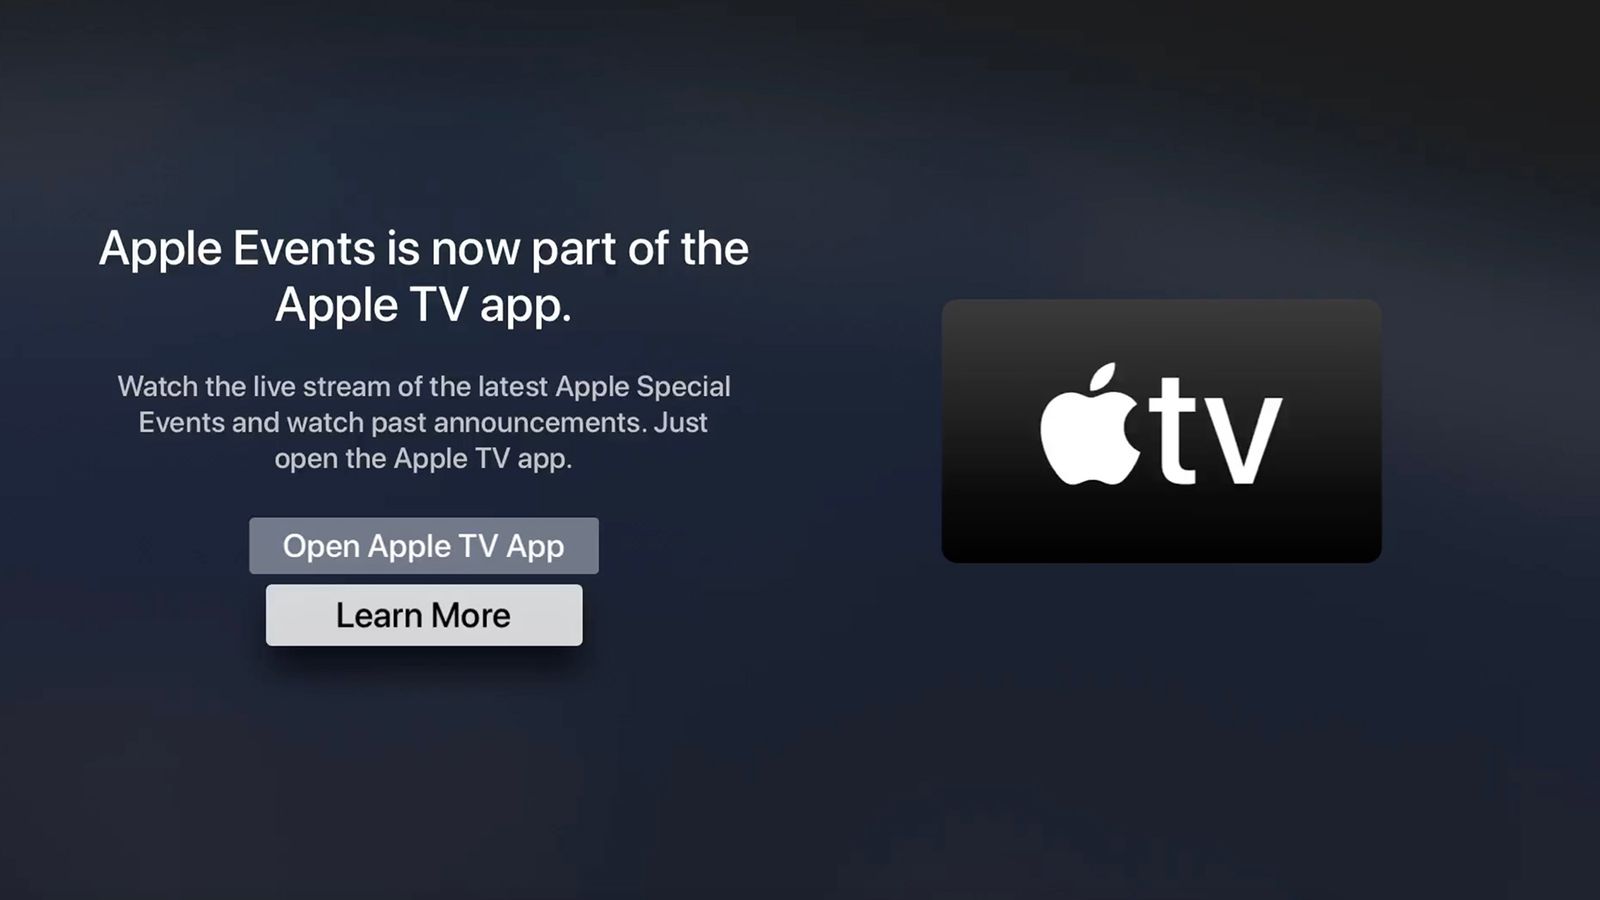 Spectrum Tv App For Macbook Air